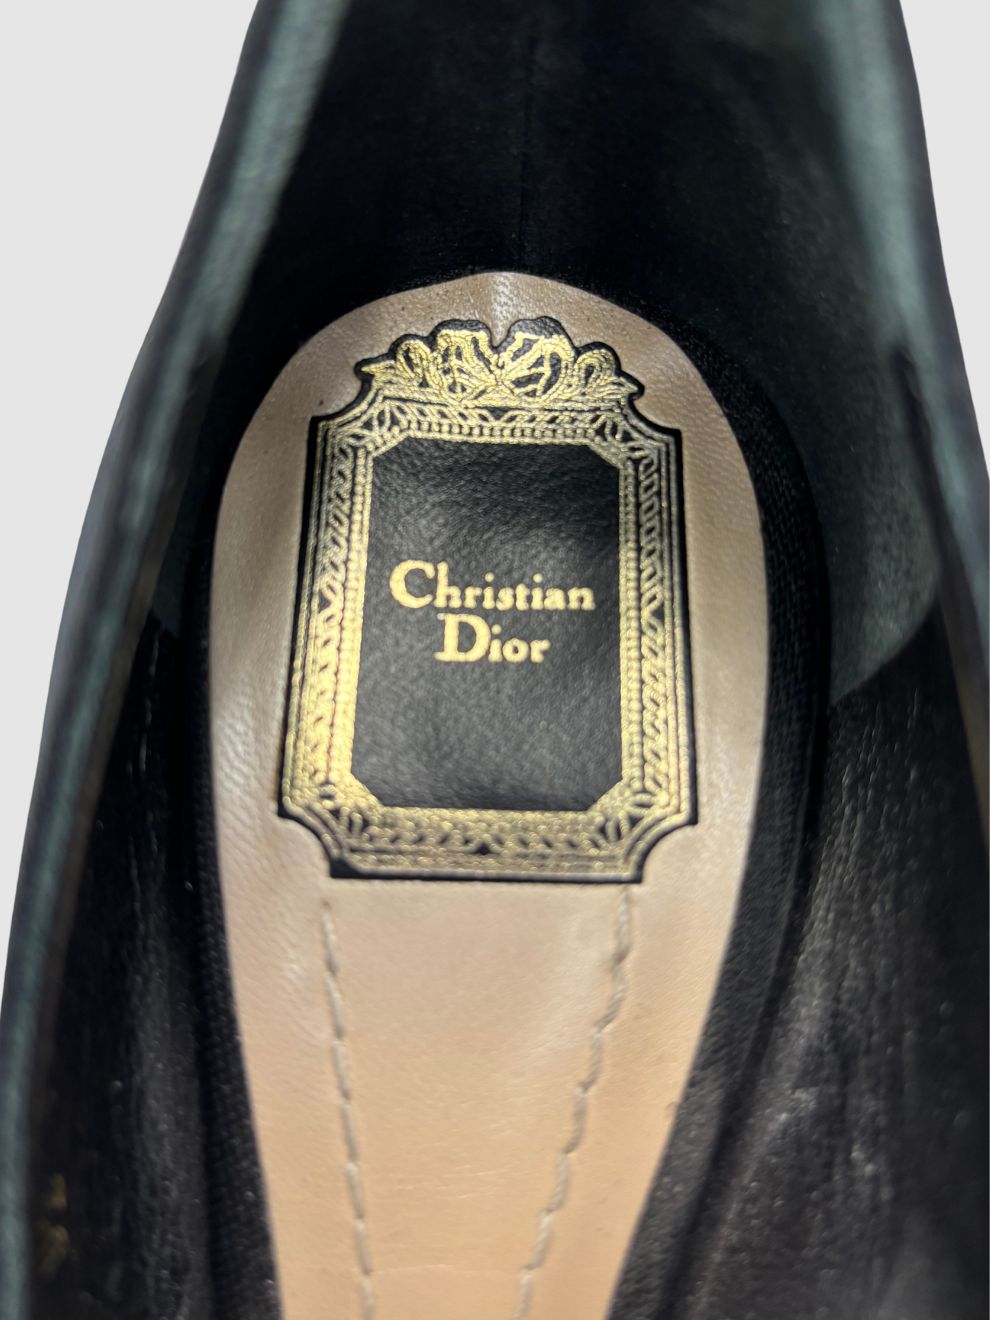 Schwarze Pumps von Christian Dior Haute Couture